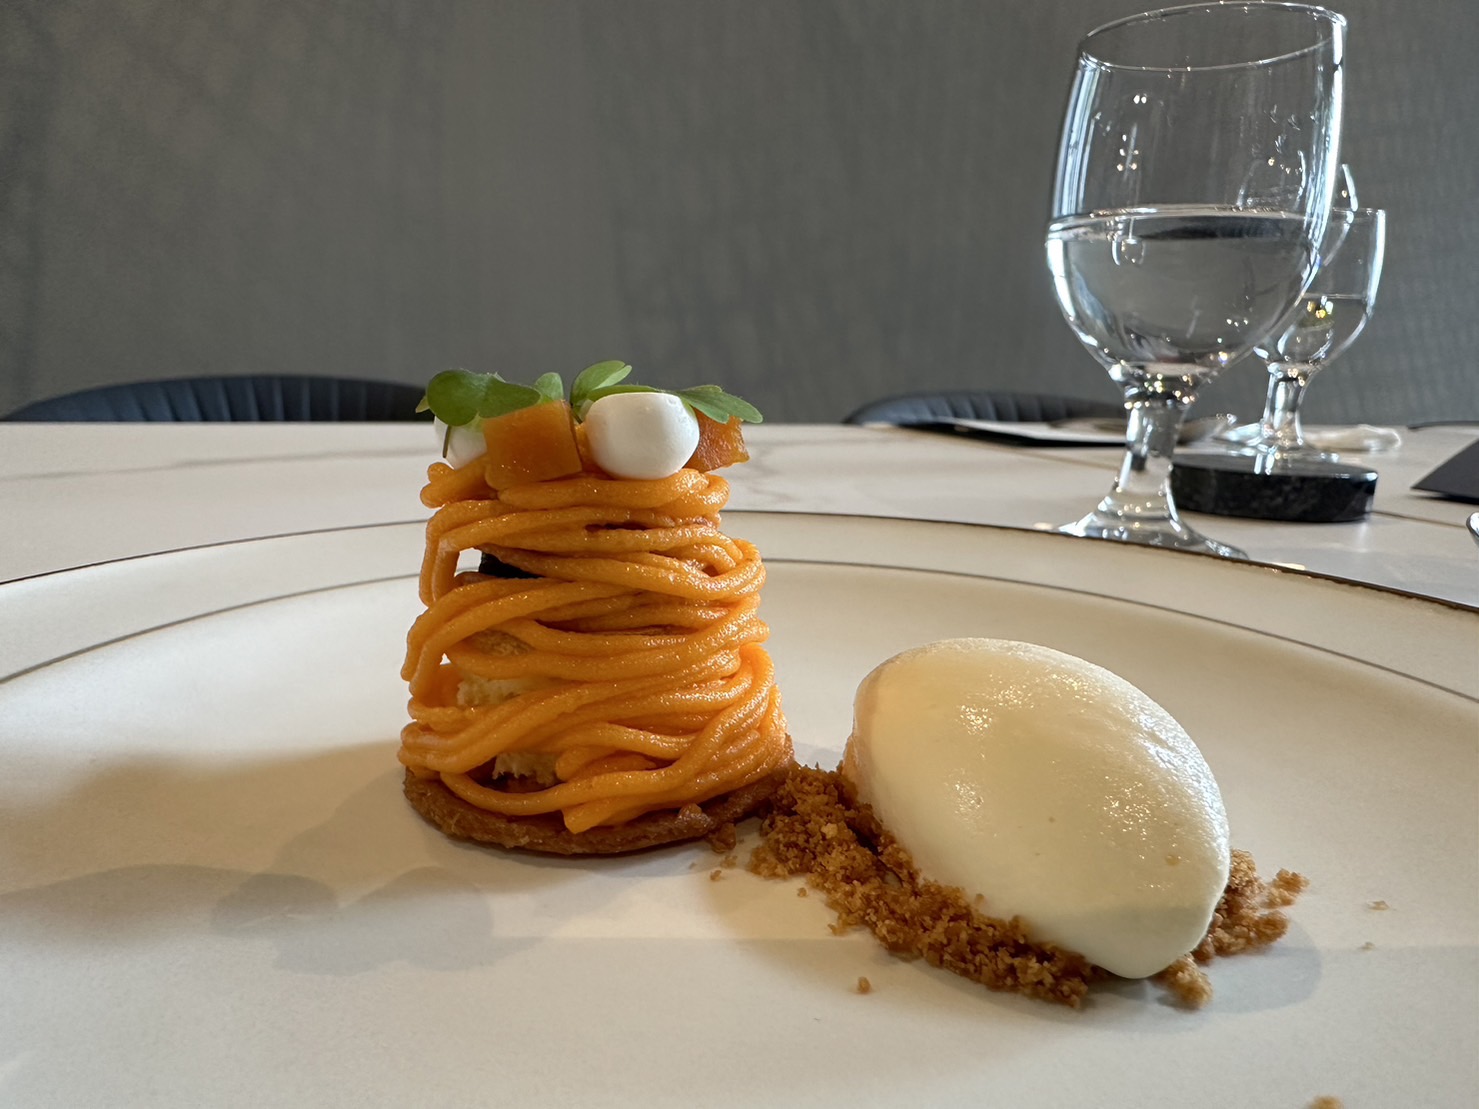 法式料理餐厅「L’Art de Vivre 如见」主厨许祐铭推出的红心地瓜甜点。记者黄寅／摄影